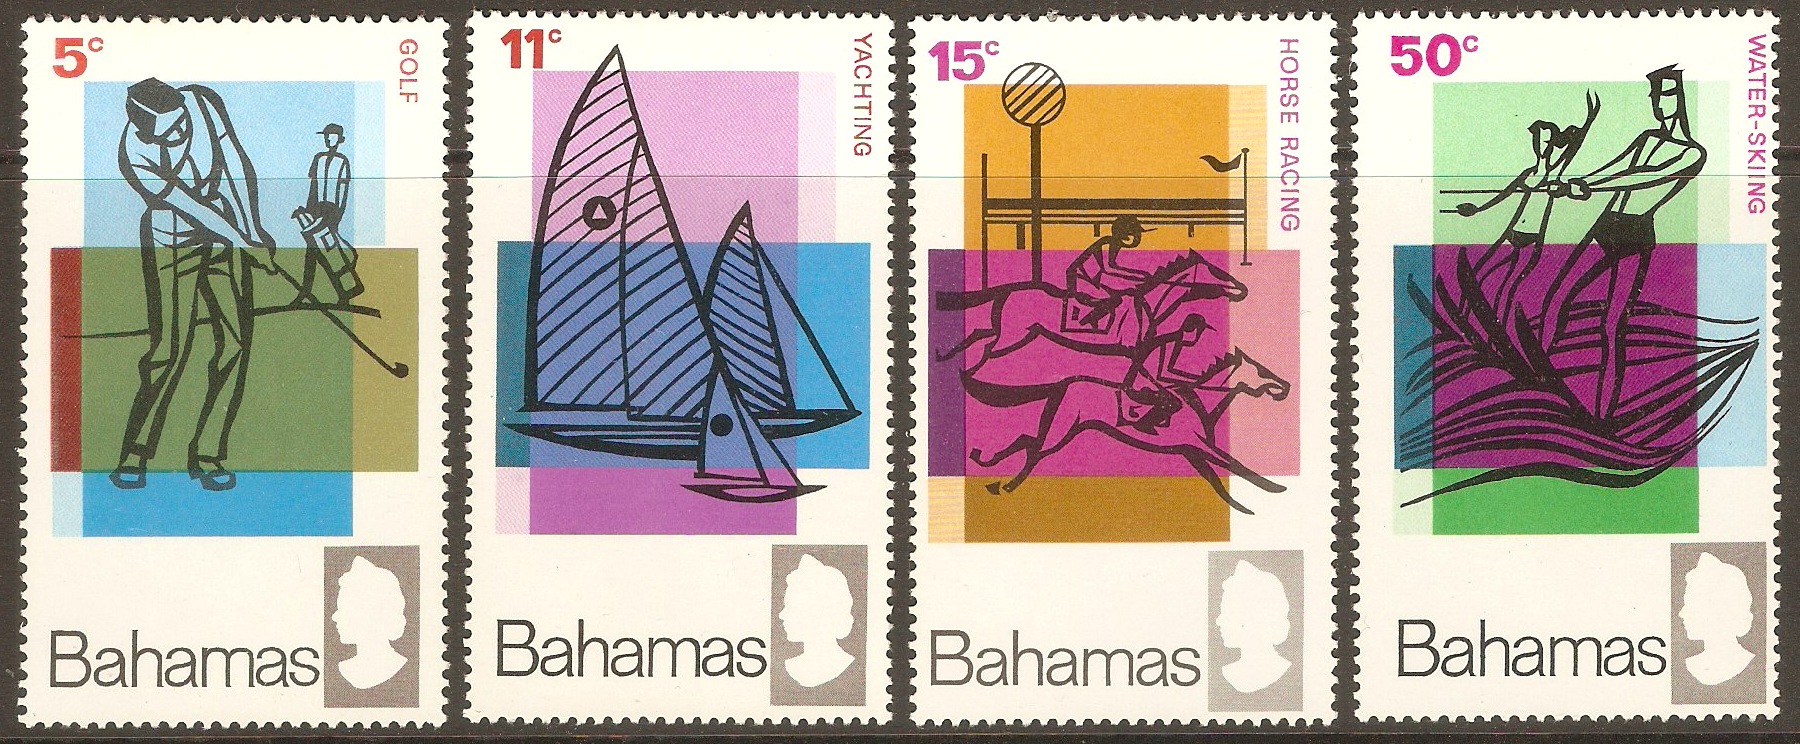 Bahamas 1968 Tourism set. SG315-SG318.